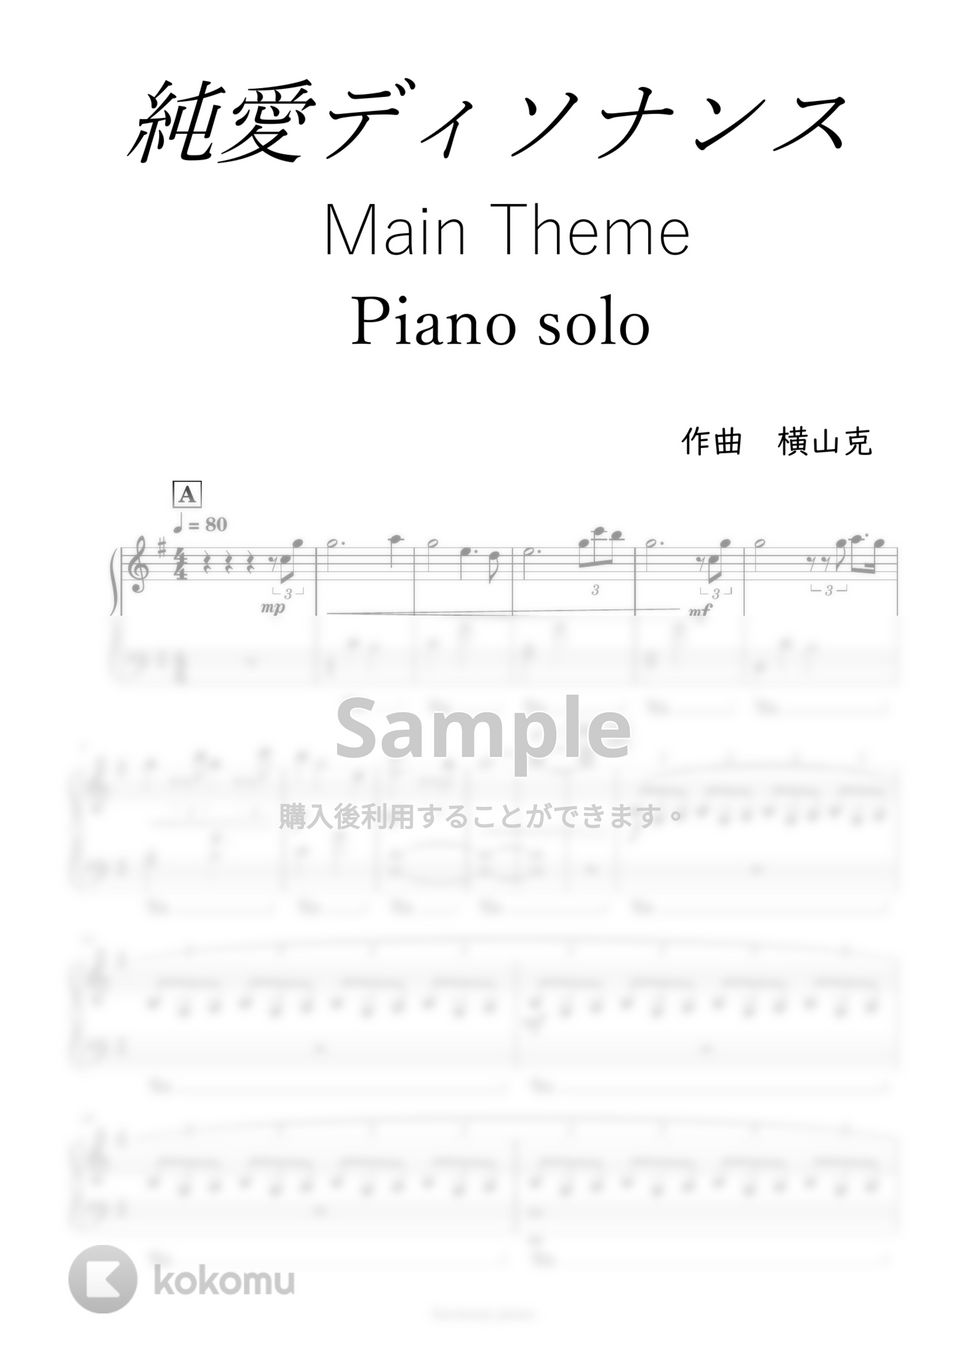 純愛ディソナンス - [７曲セット]Fate or Destinyと純愛ディソナンス サントラBGM集 by harmony piano